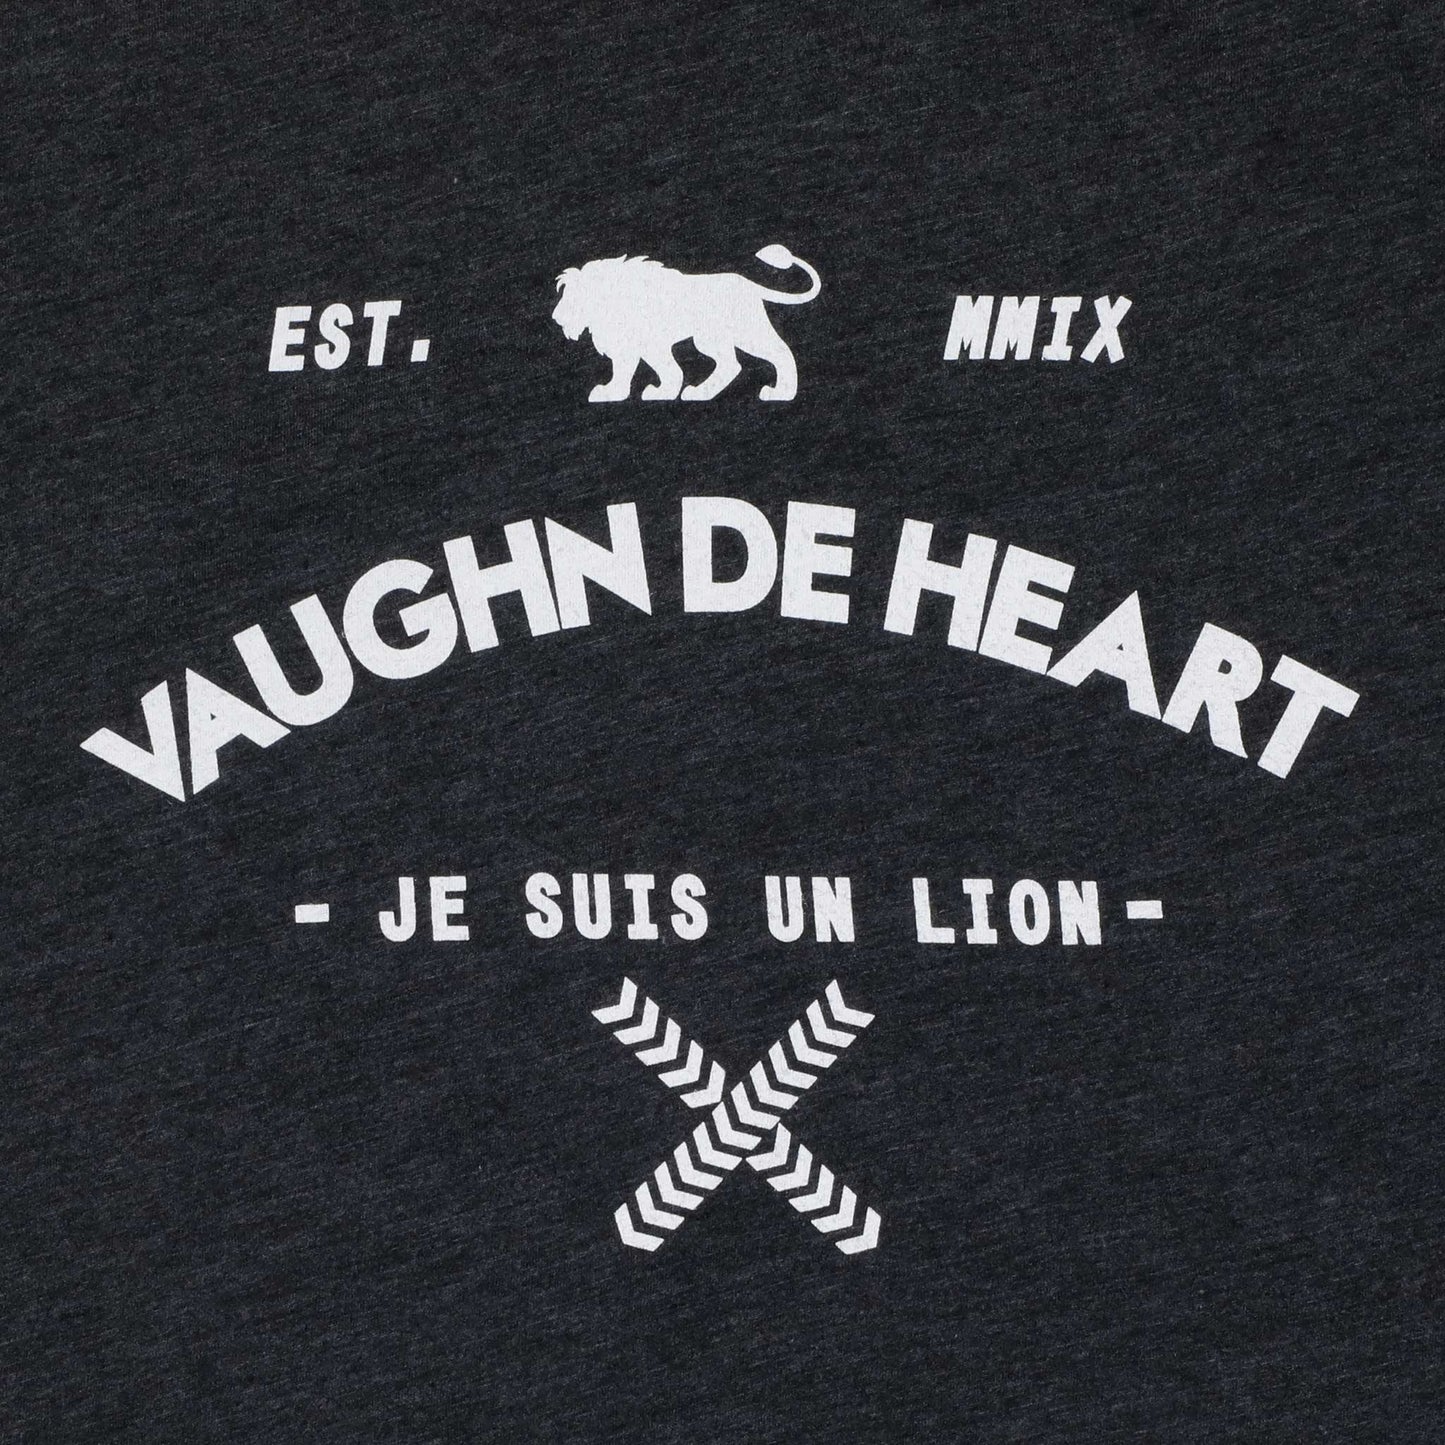 Women's - Established Heather Grey Crew Neck T-Shirt-Vaughn de Heart